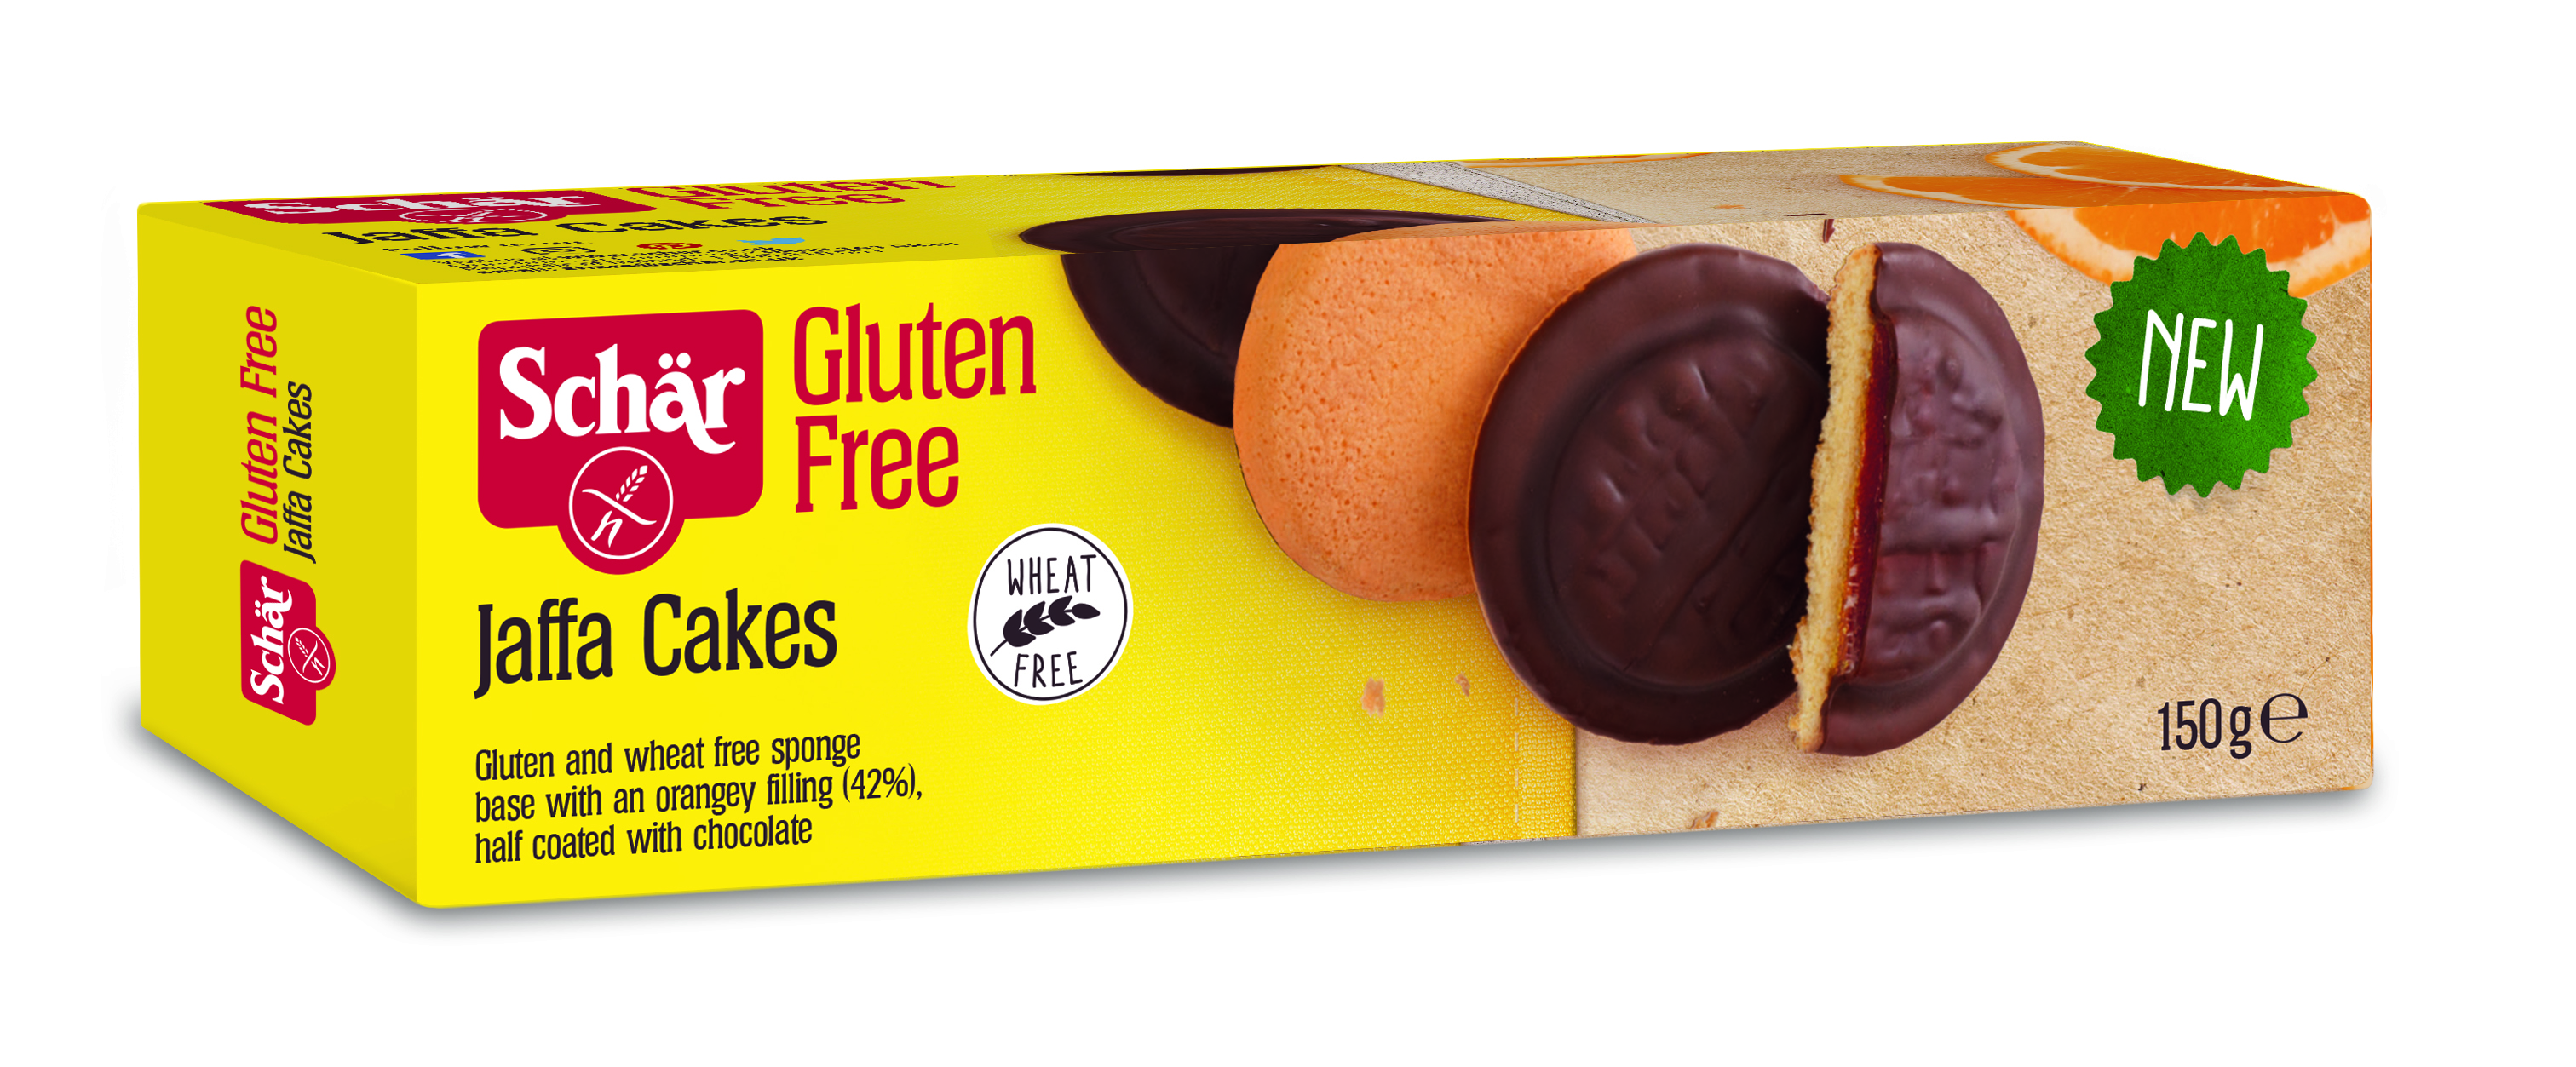 Schär release gluten-free Jaffa Cakes